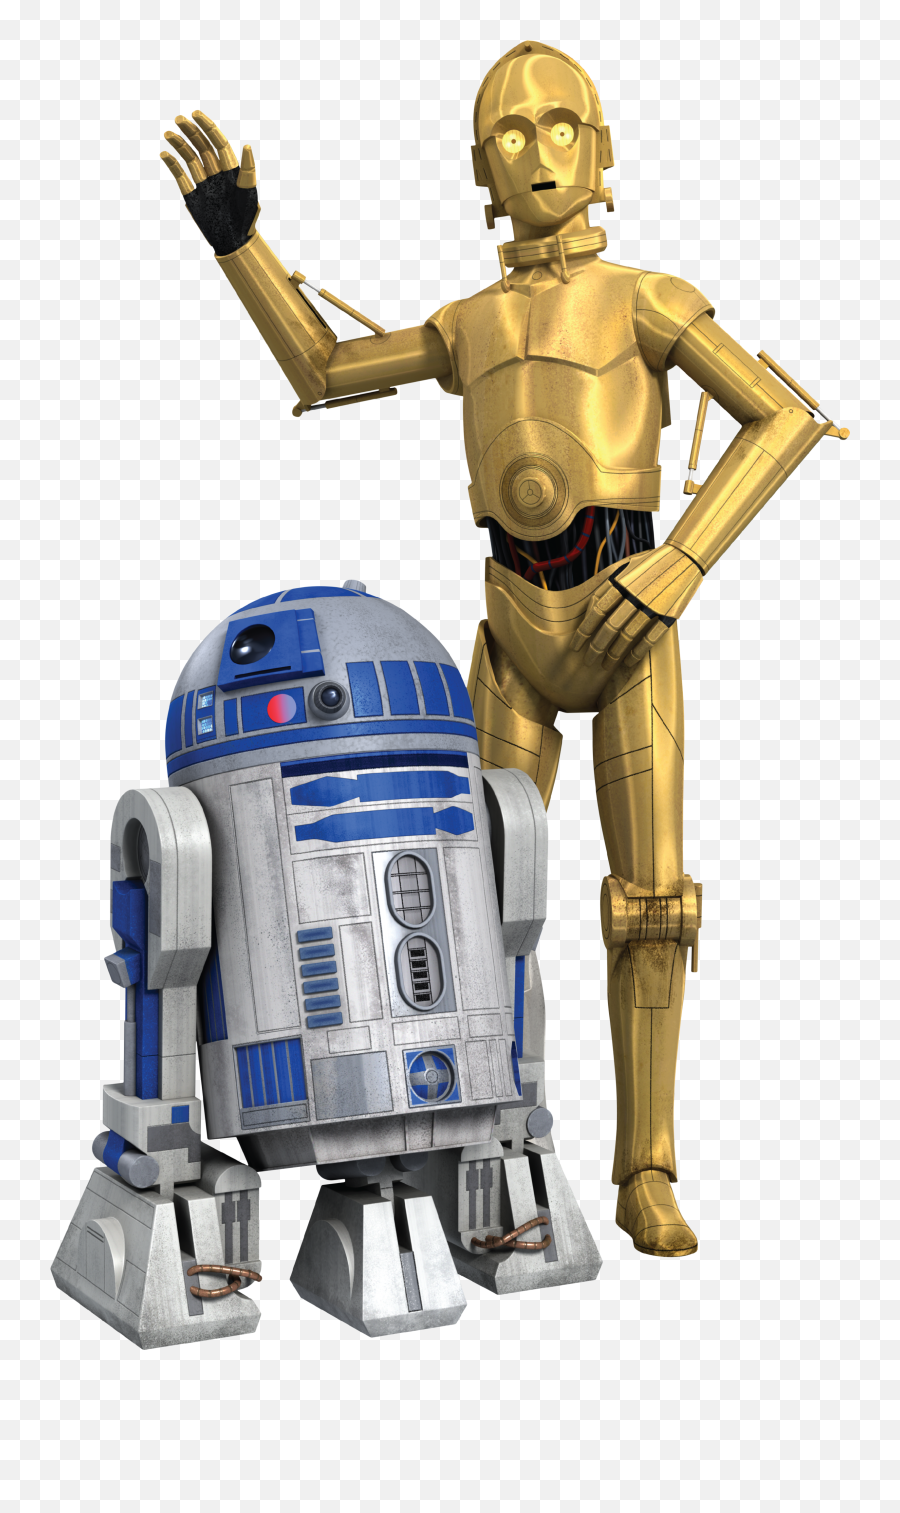 Download Rebels R2 D2 And C 3po - Star Wars Rebels R2d2 Star Wars Rebels And Clone Wars R2d2 Emoji,Star Wars Rebels Logo